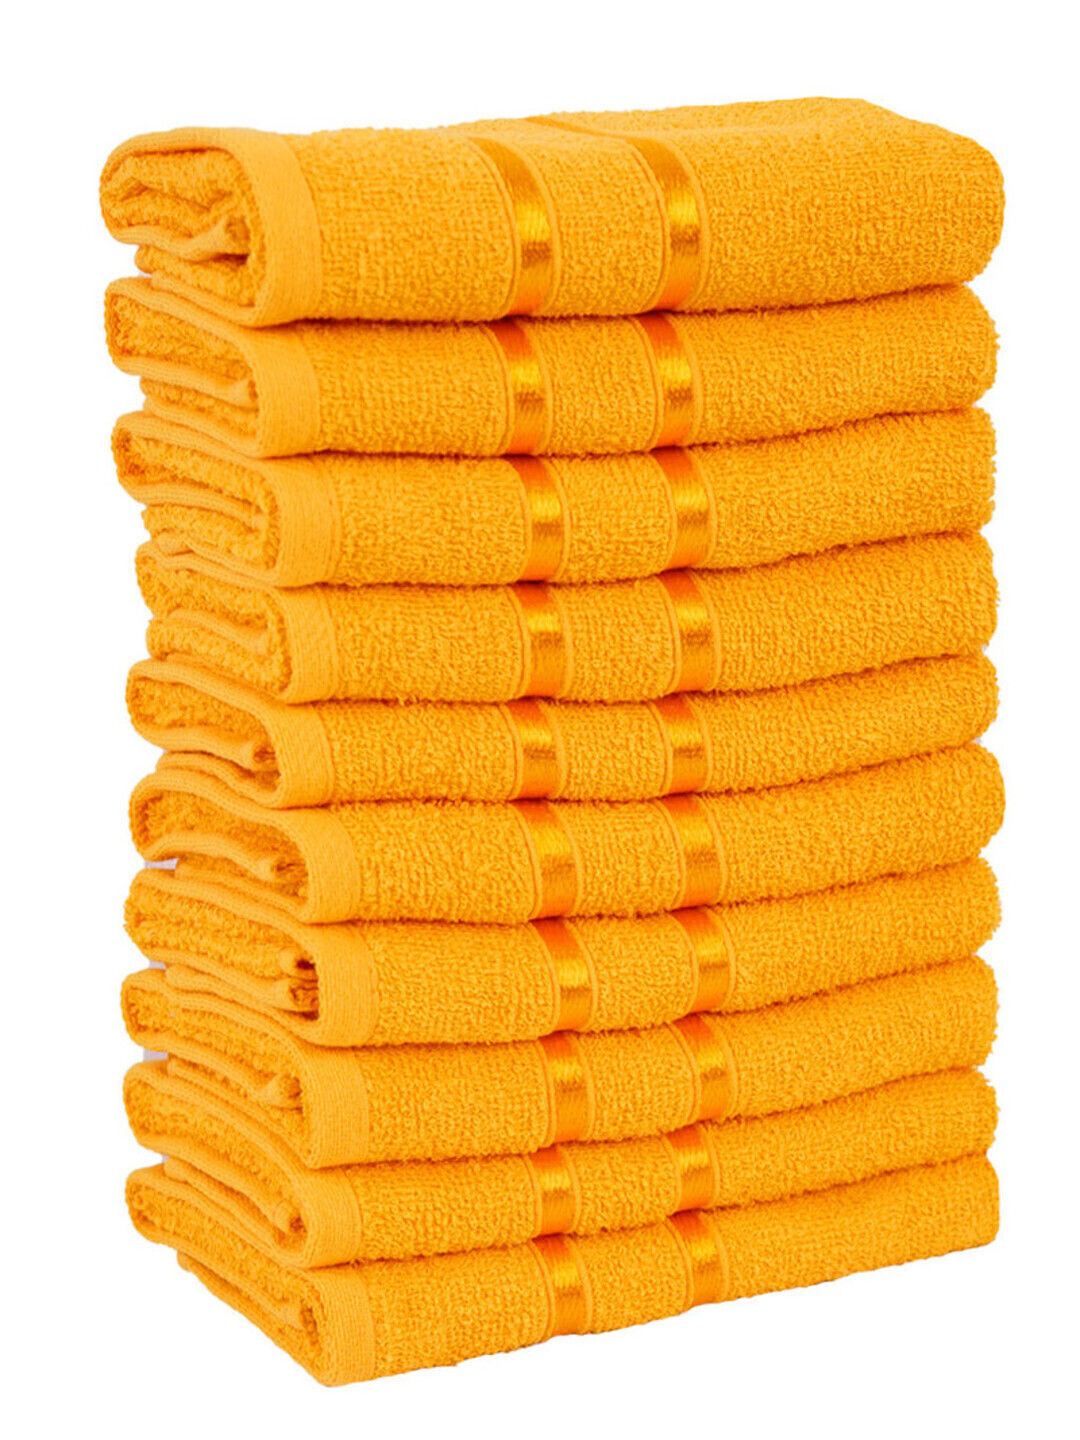 Полотенце махровое Орион Сафия Хоум, 51044 желтый 